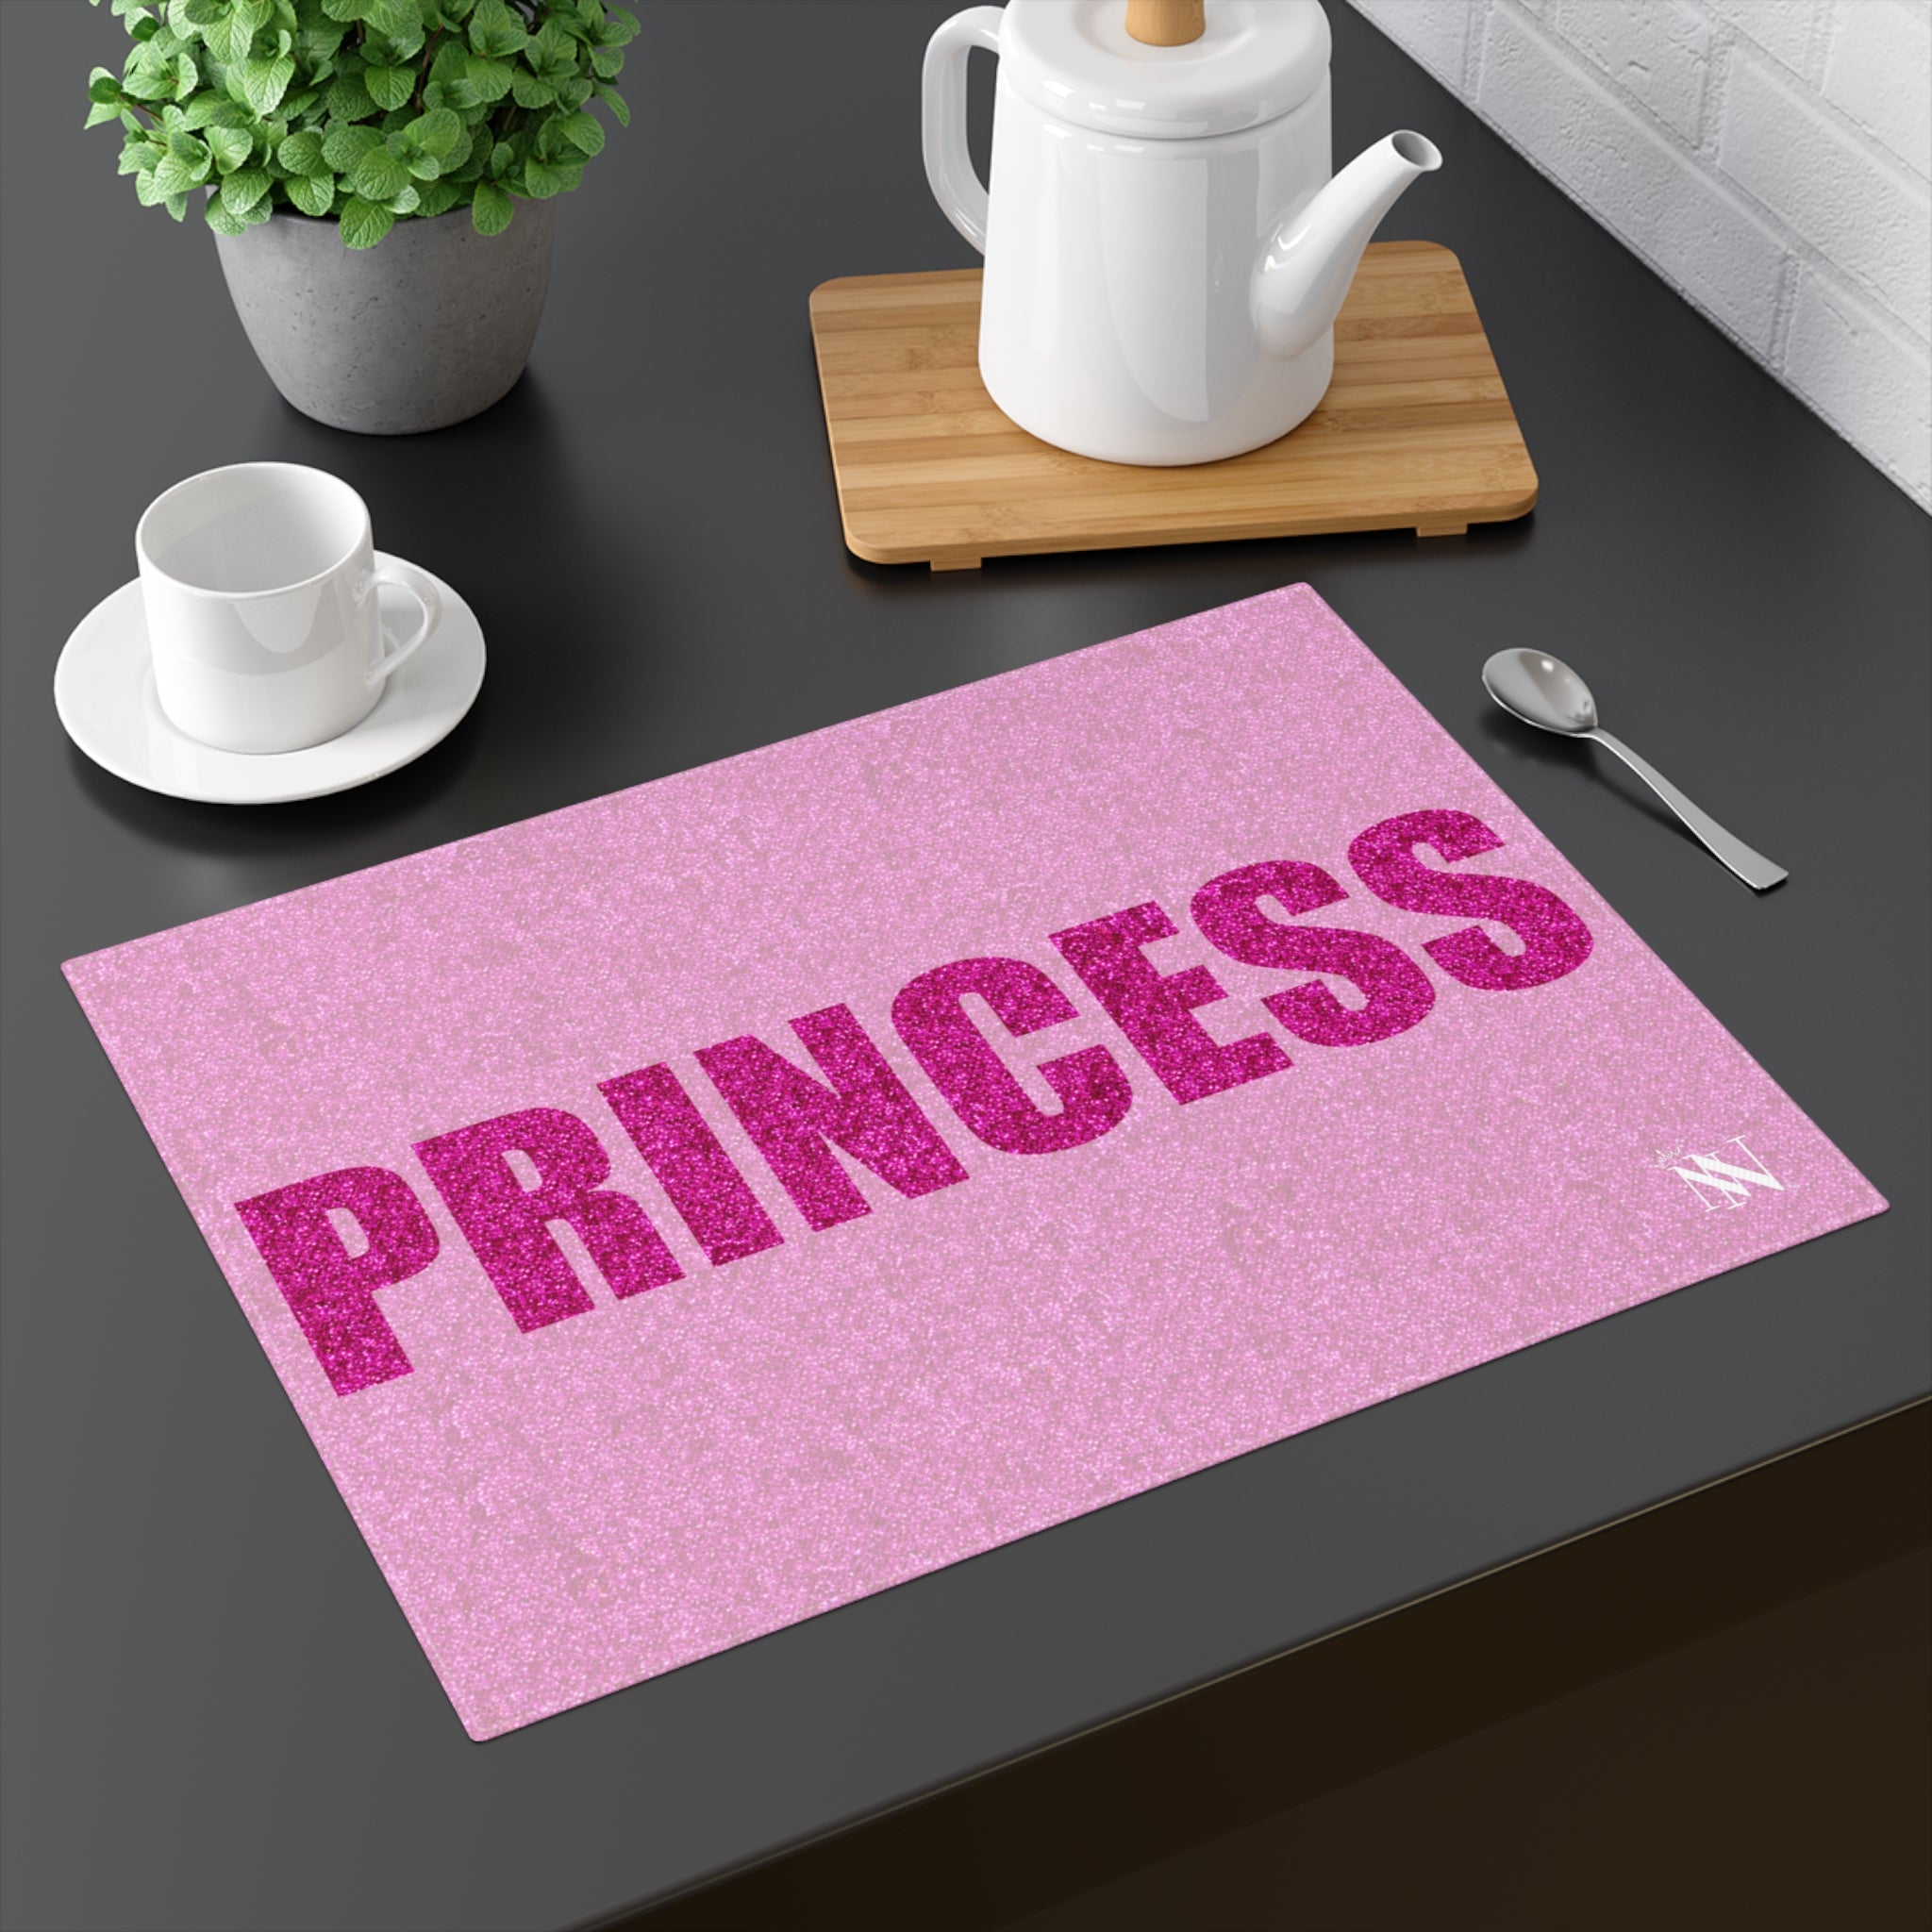 Princess sex toys mat